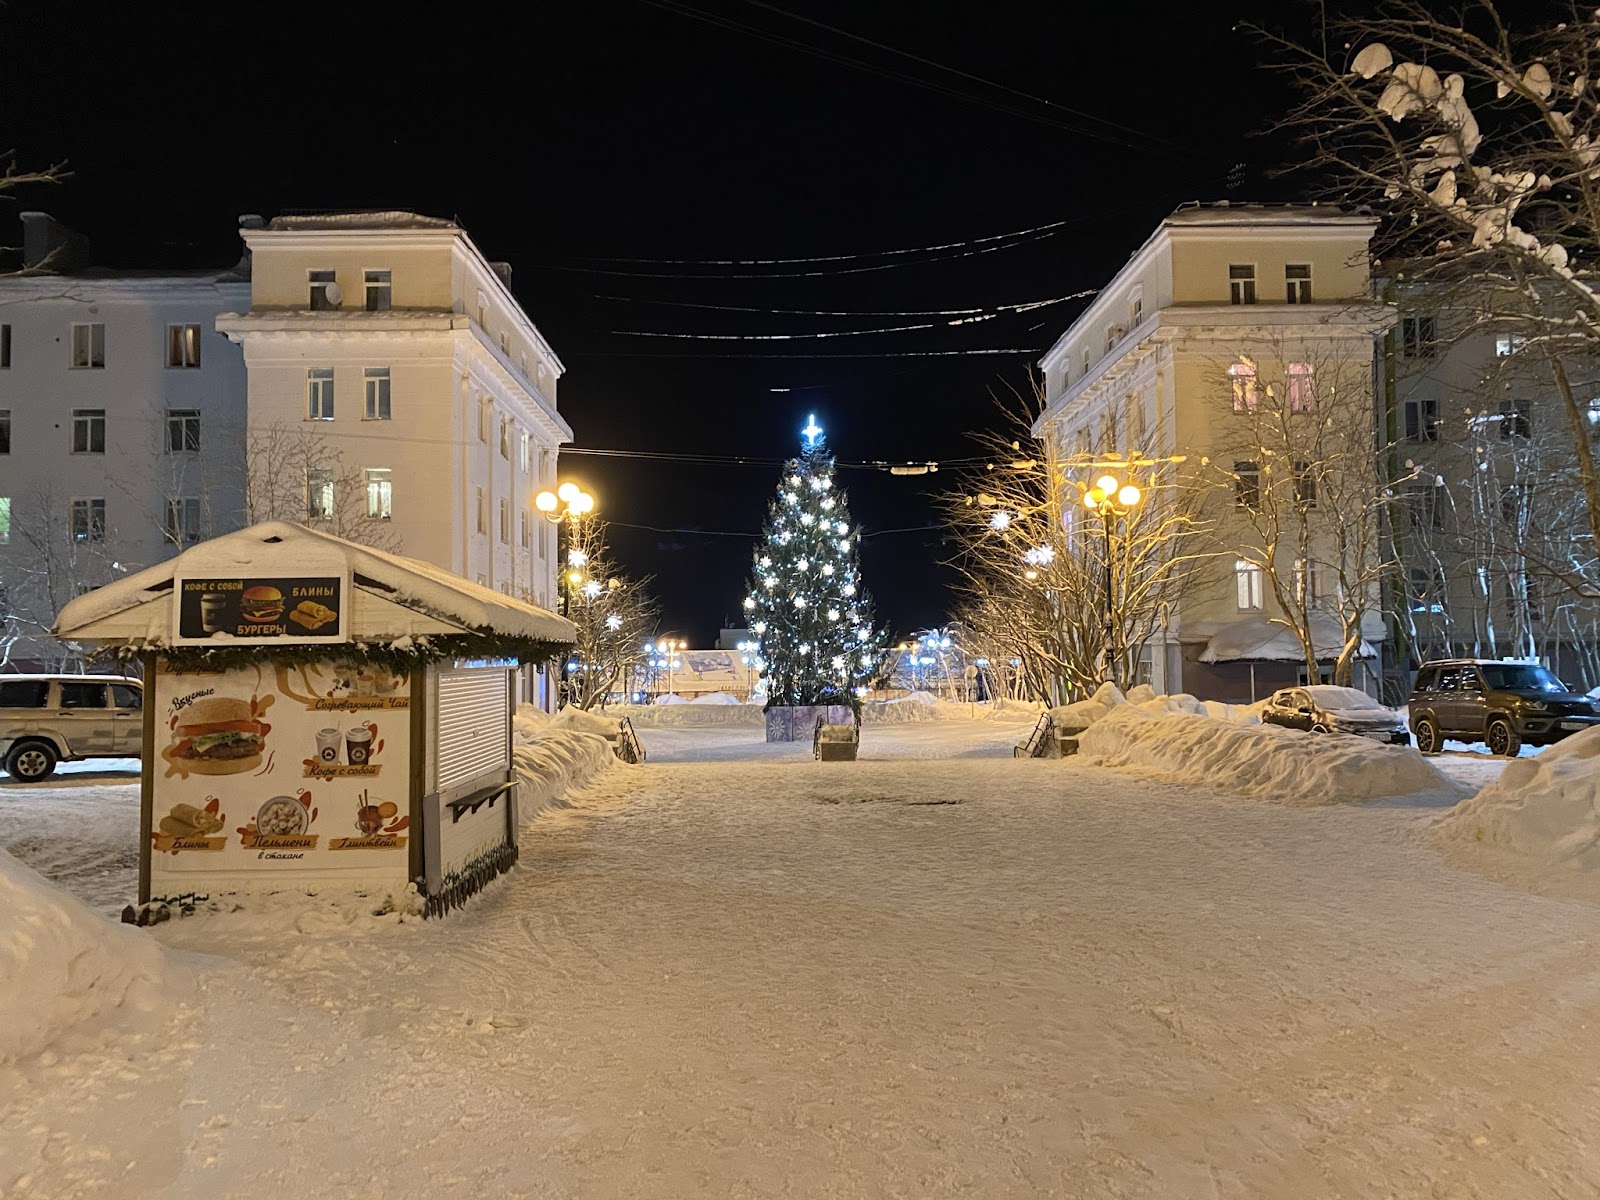 Горнолыжный Кировск в январе – стоит ли ехать в Большой Вудъявр?